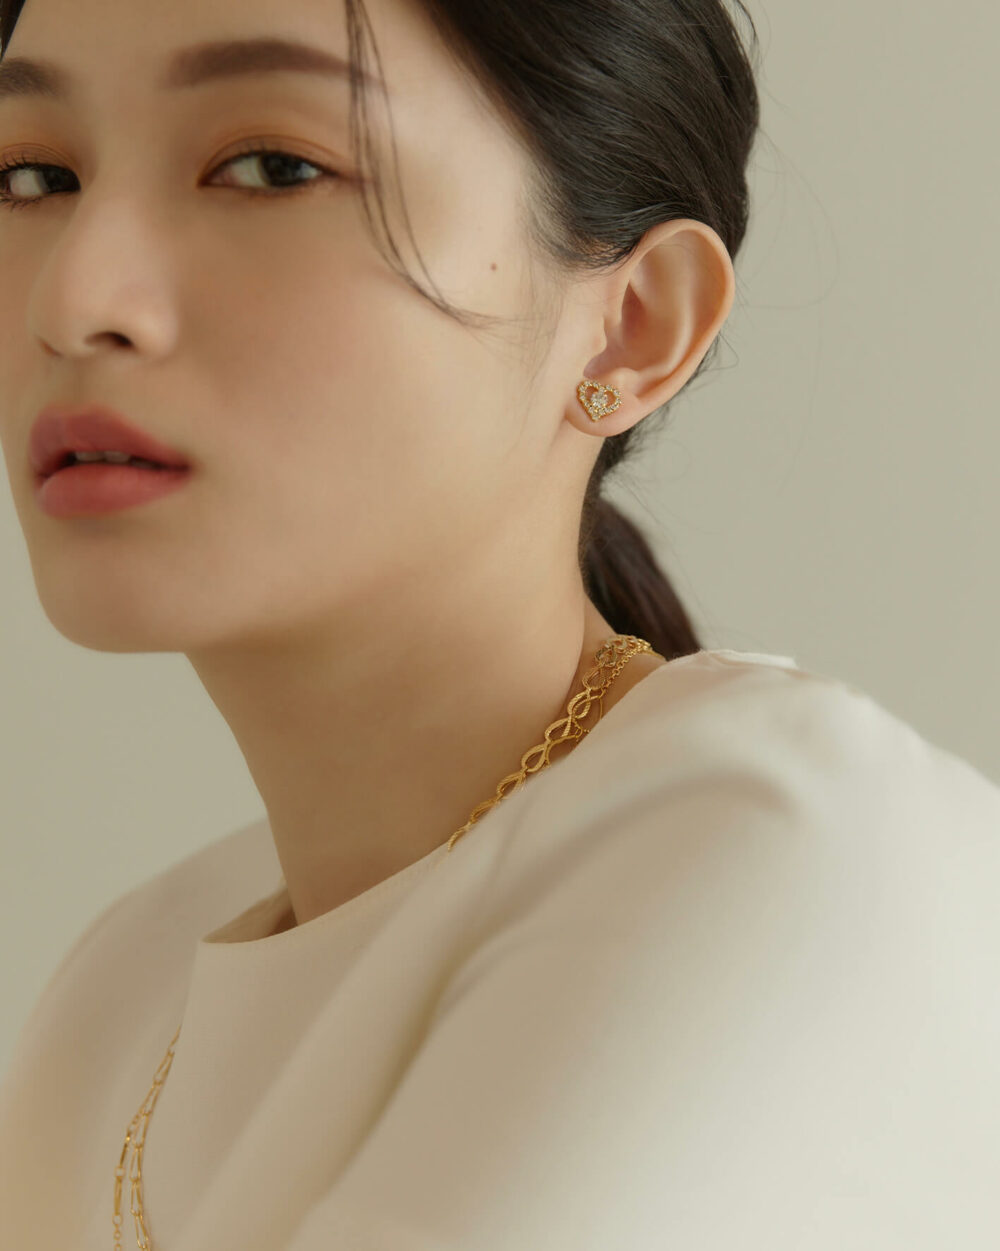 Eco安珂,韓國飾品,韓國耳環,韓國耳骨夾,韓國耳扣,耳夾式耳環,磁鐵愛心耳環,磁吸式耳環,無耳洞耳環